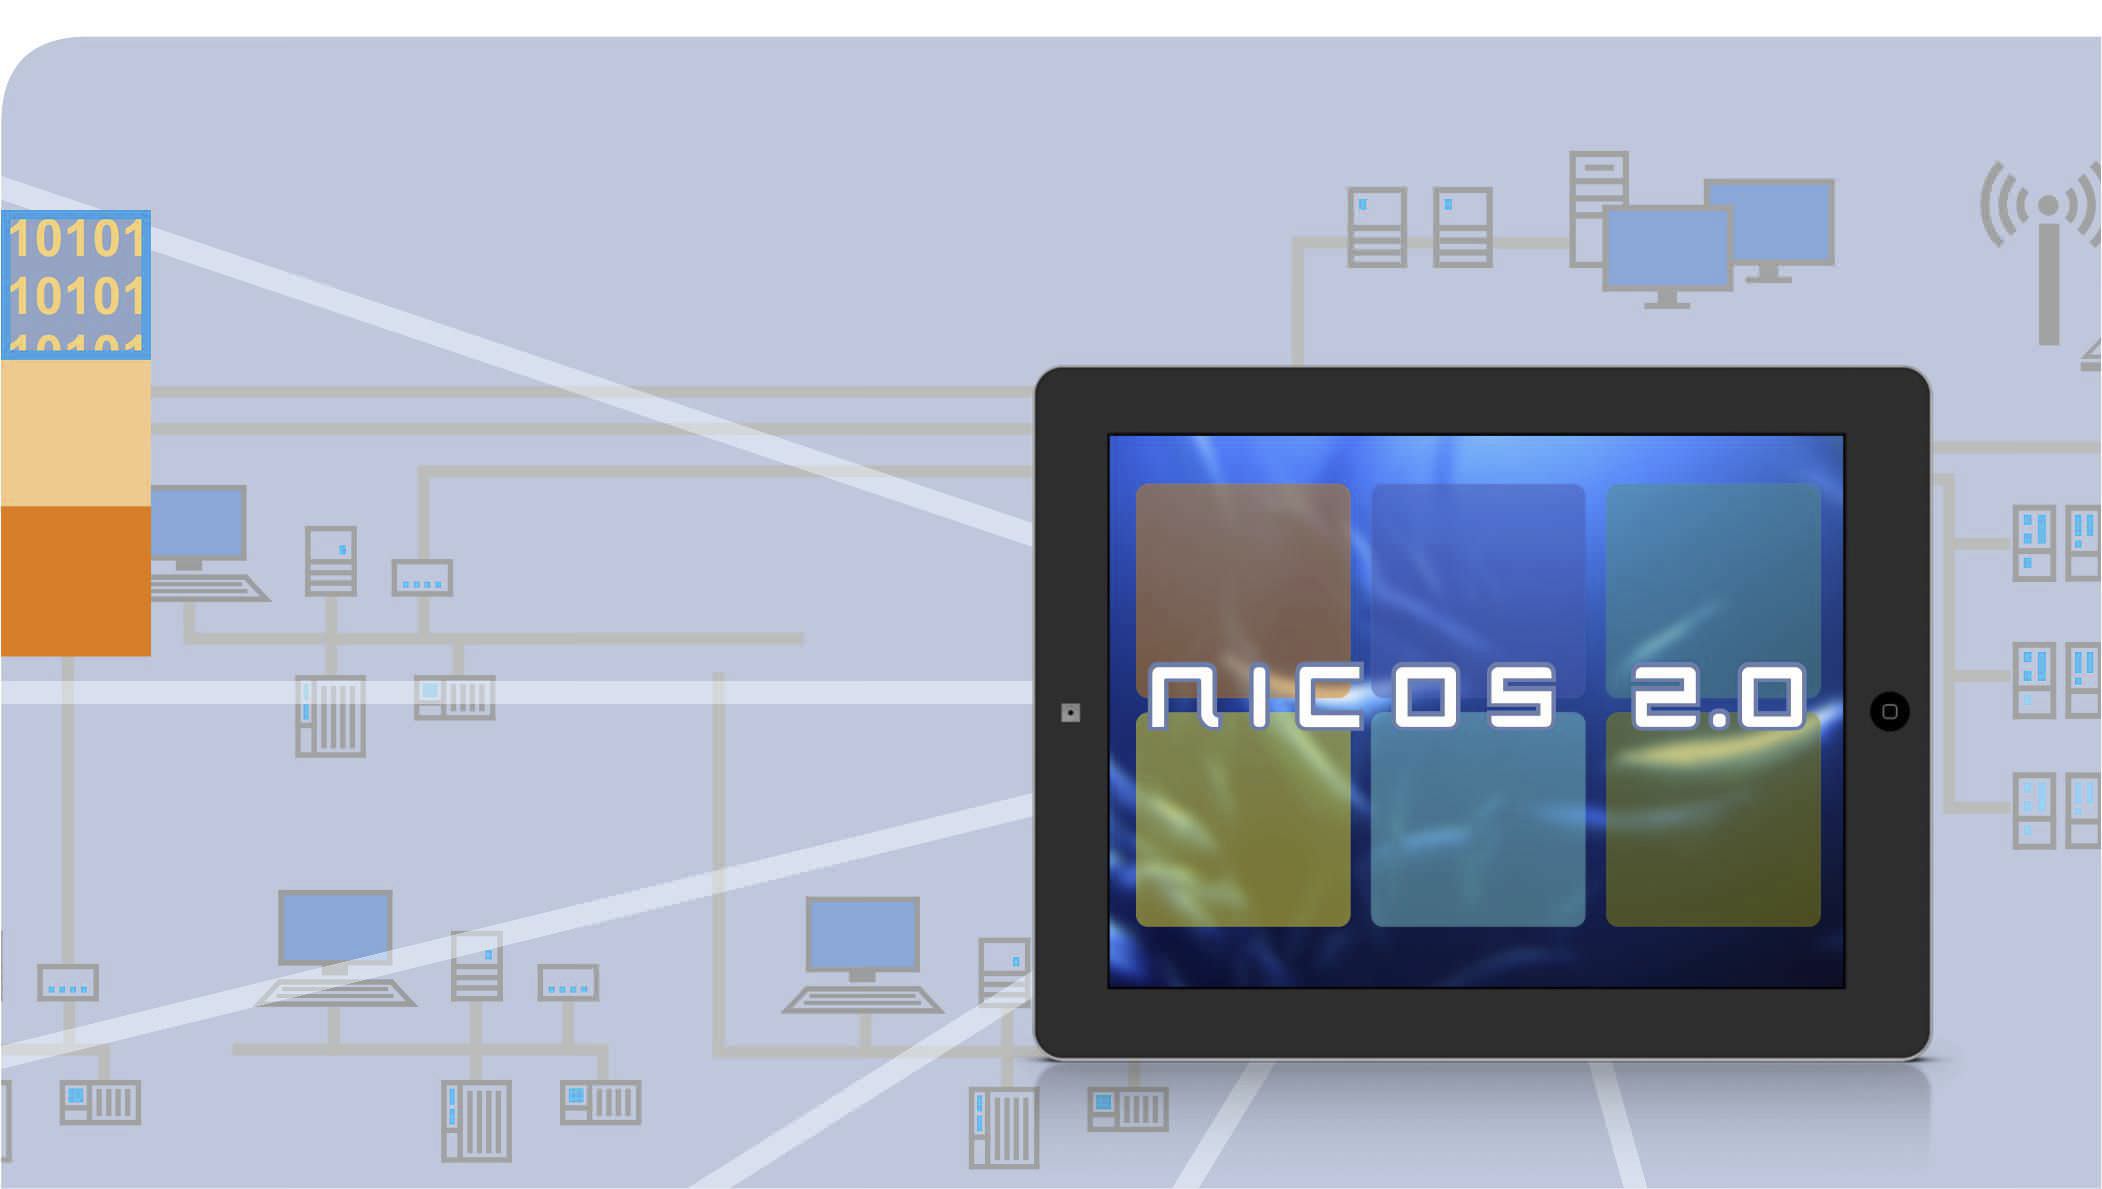 Программное обеспечение контроля контроля процесса SCADA NICOS 2.0 NIVUS GmbH